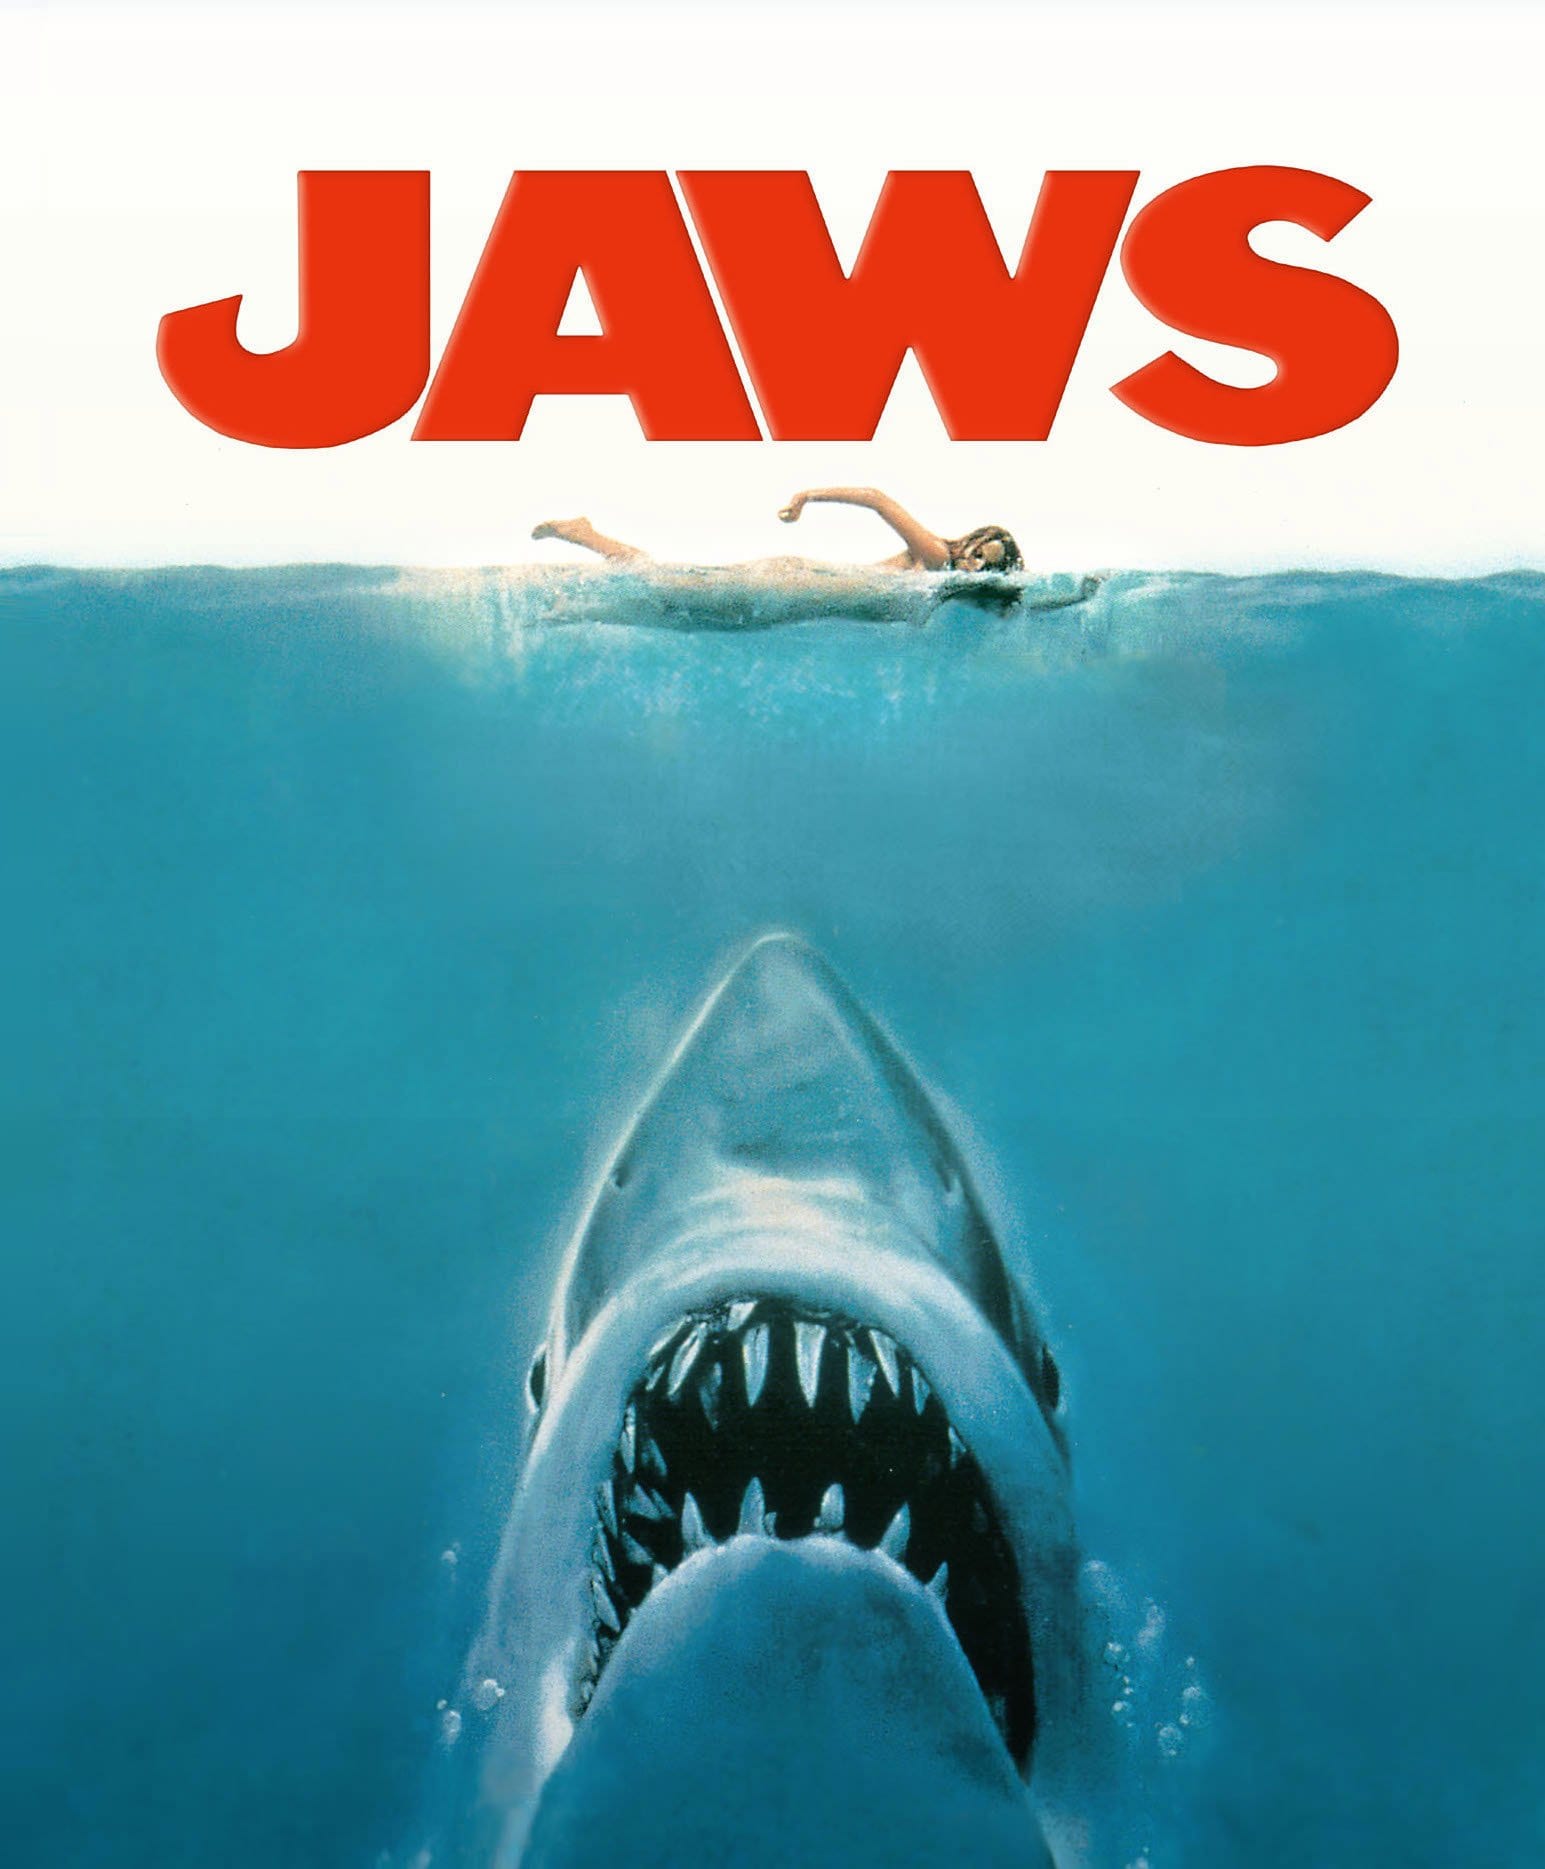 Explorando el impacto de Jaws en la cultura pop en la década de 1970